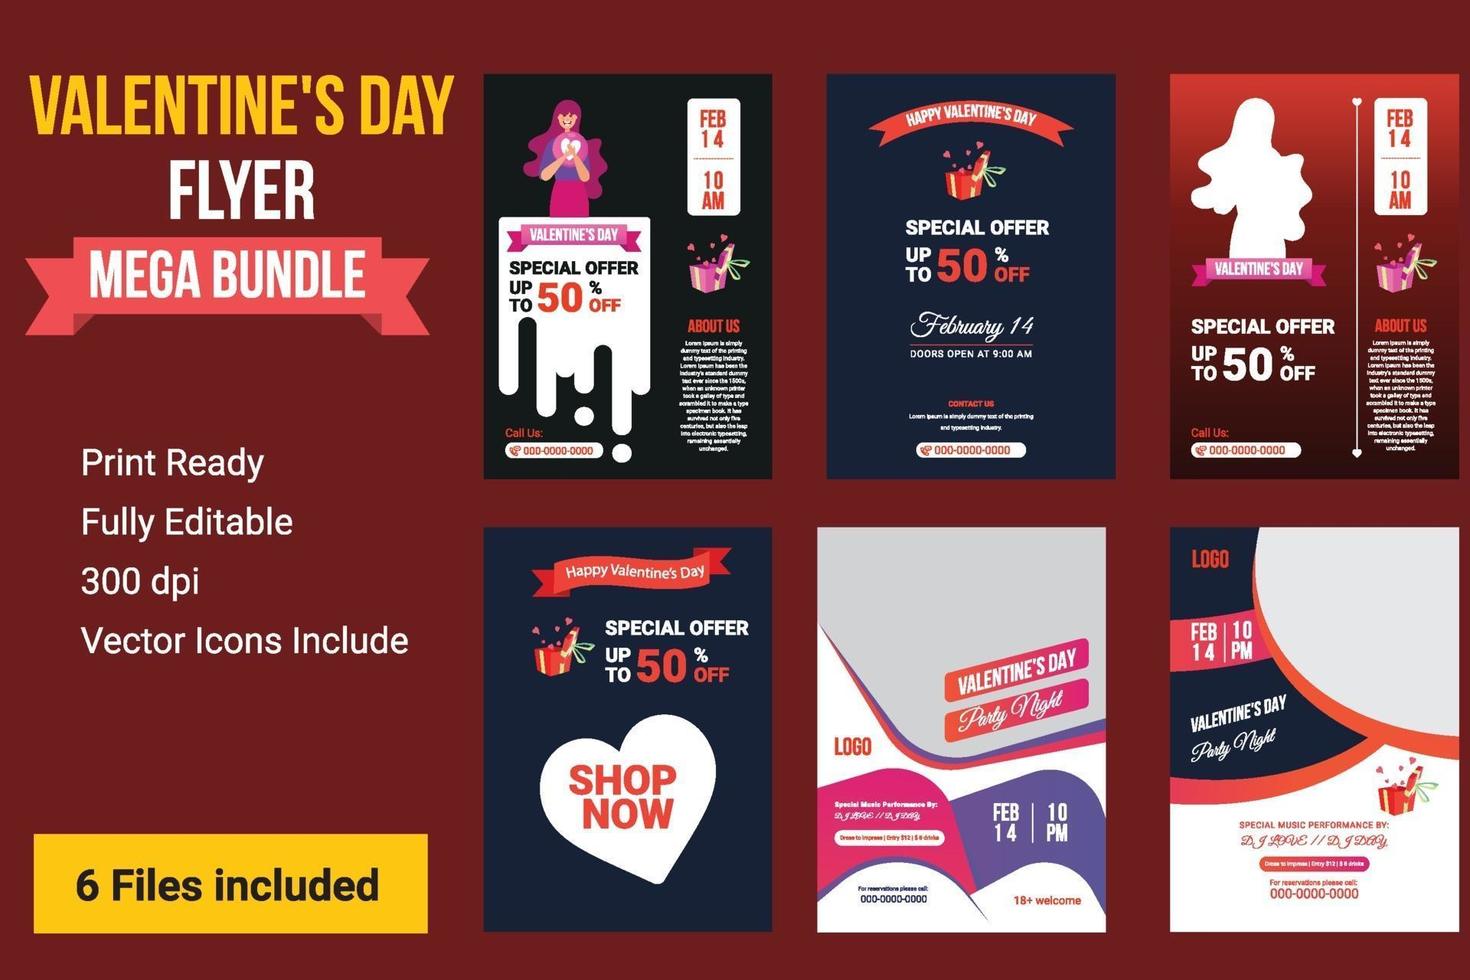 Happy Valentinstag Party Flyer, Valentinstag Verkauf Hintergrund vektor